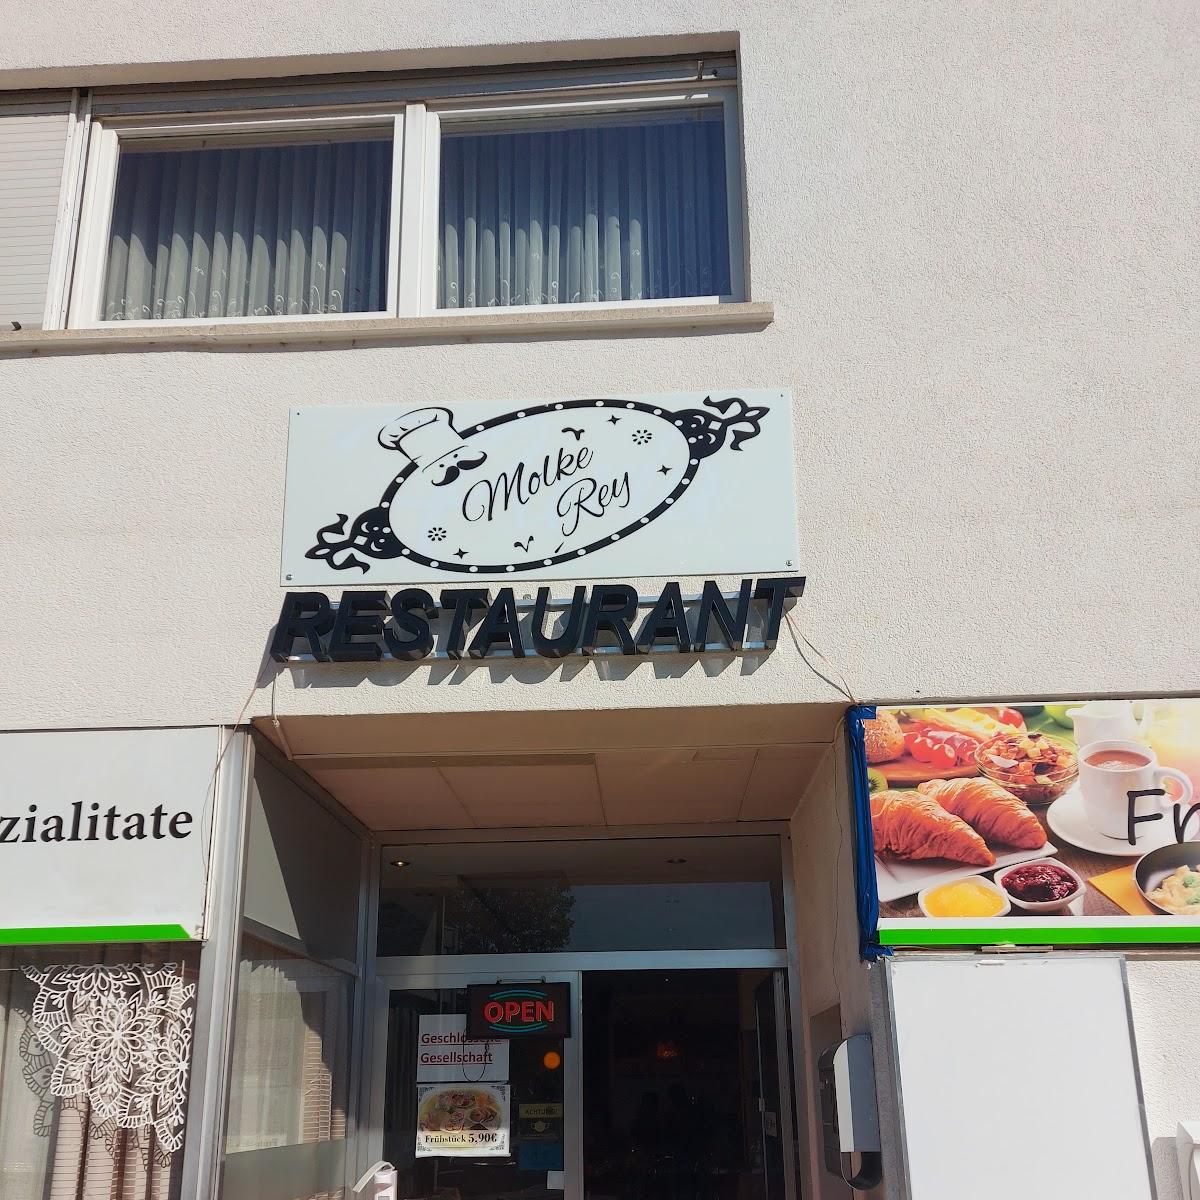 Restaurant "Molke Rey Restaurant Persisch Iranisch" in Hanau